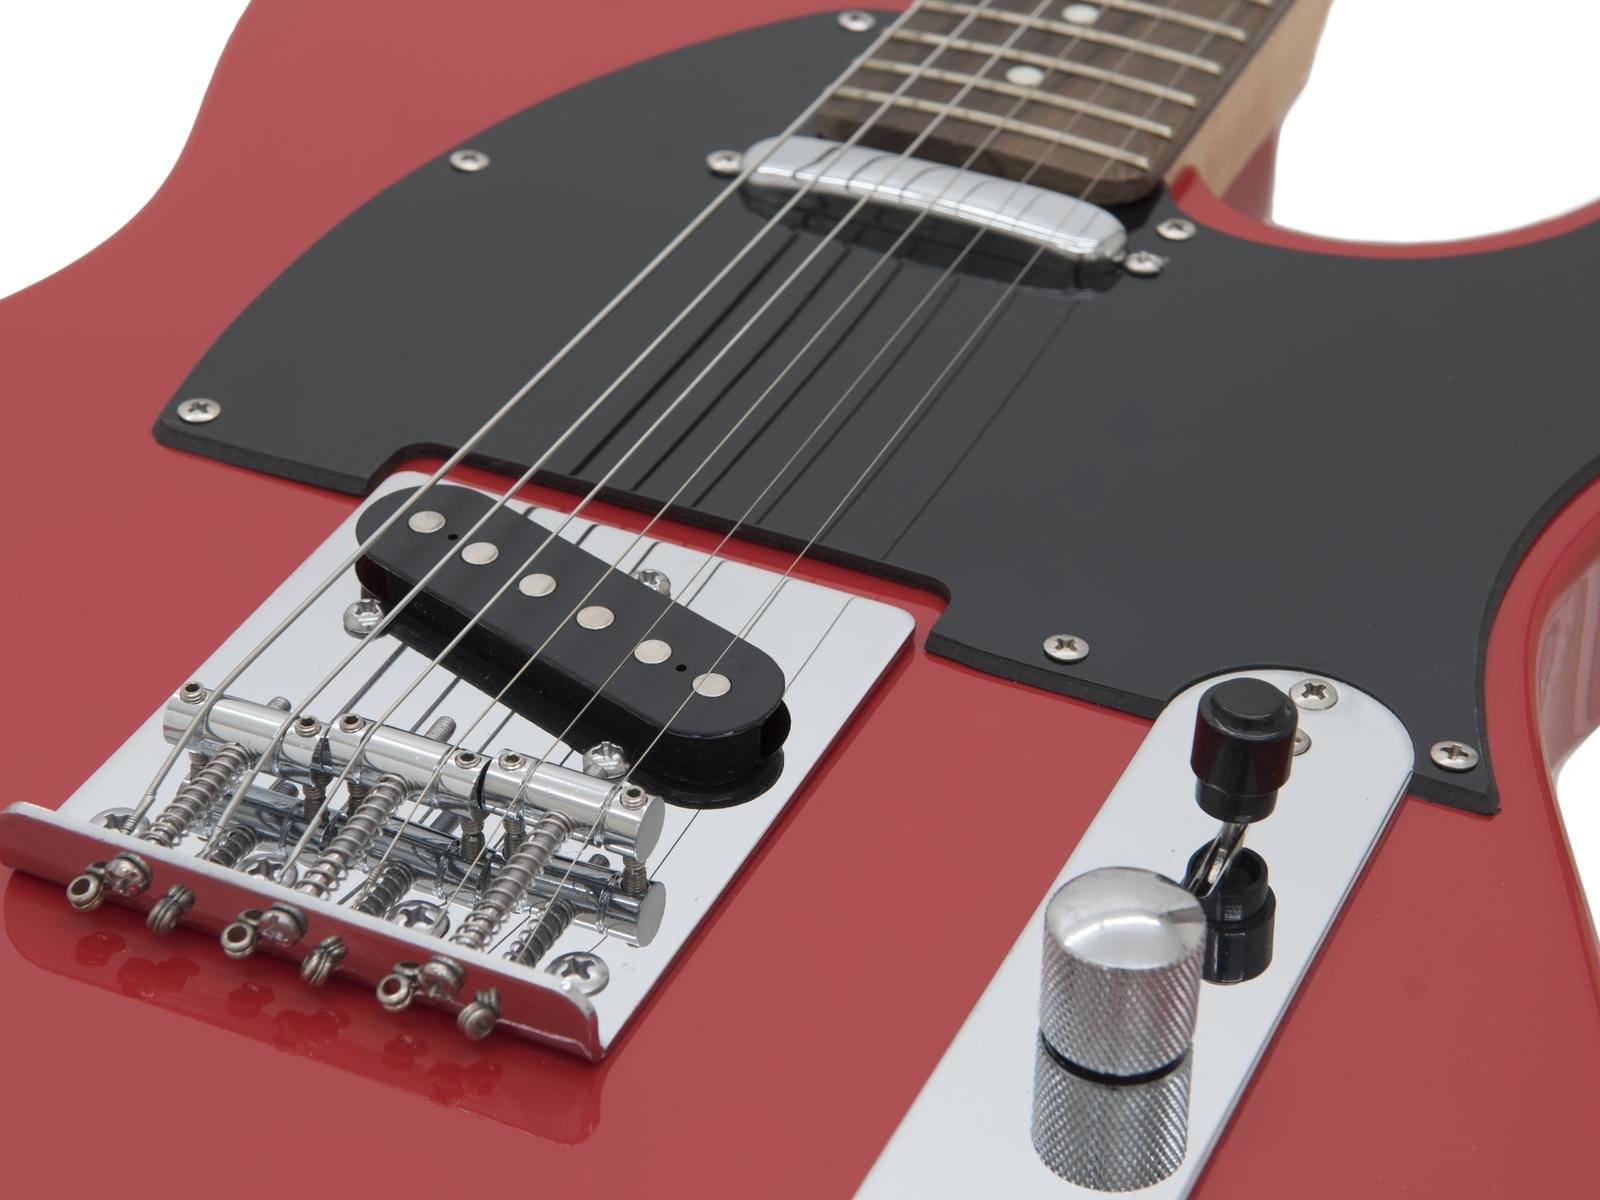 DIMAVERY TL-401 E-Gitarre, rot